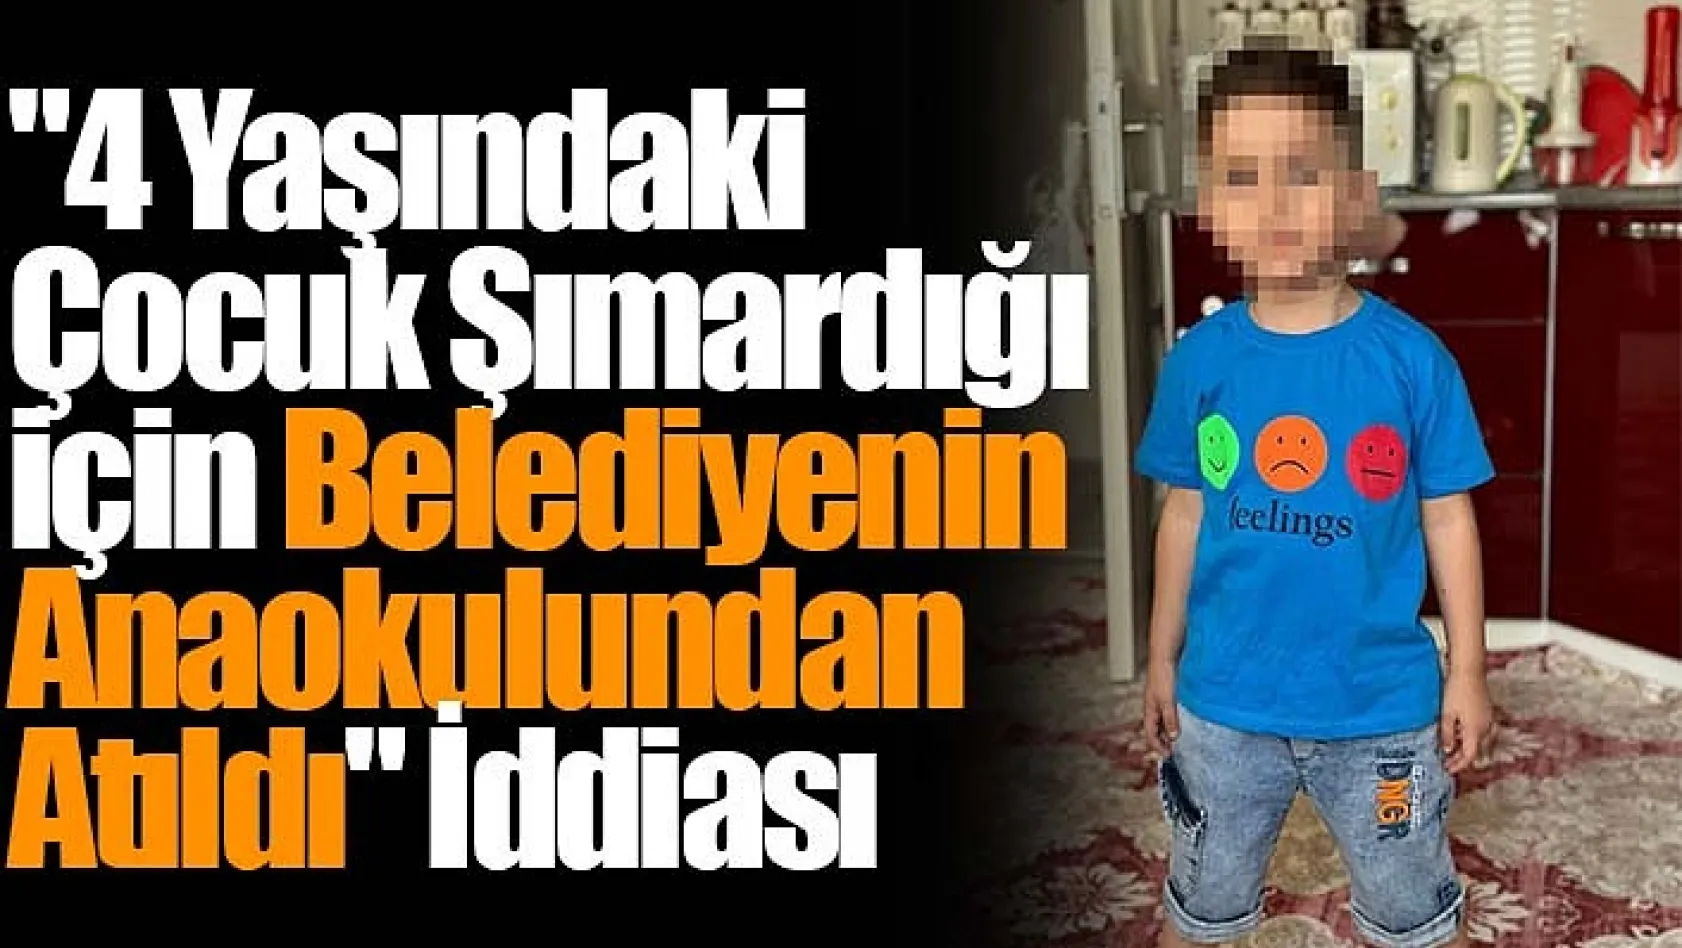 Ř yaşındaki çocuk şımardığı için belediyenin anaokulundan atıldı" iddiası